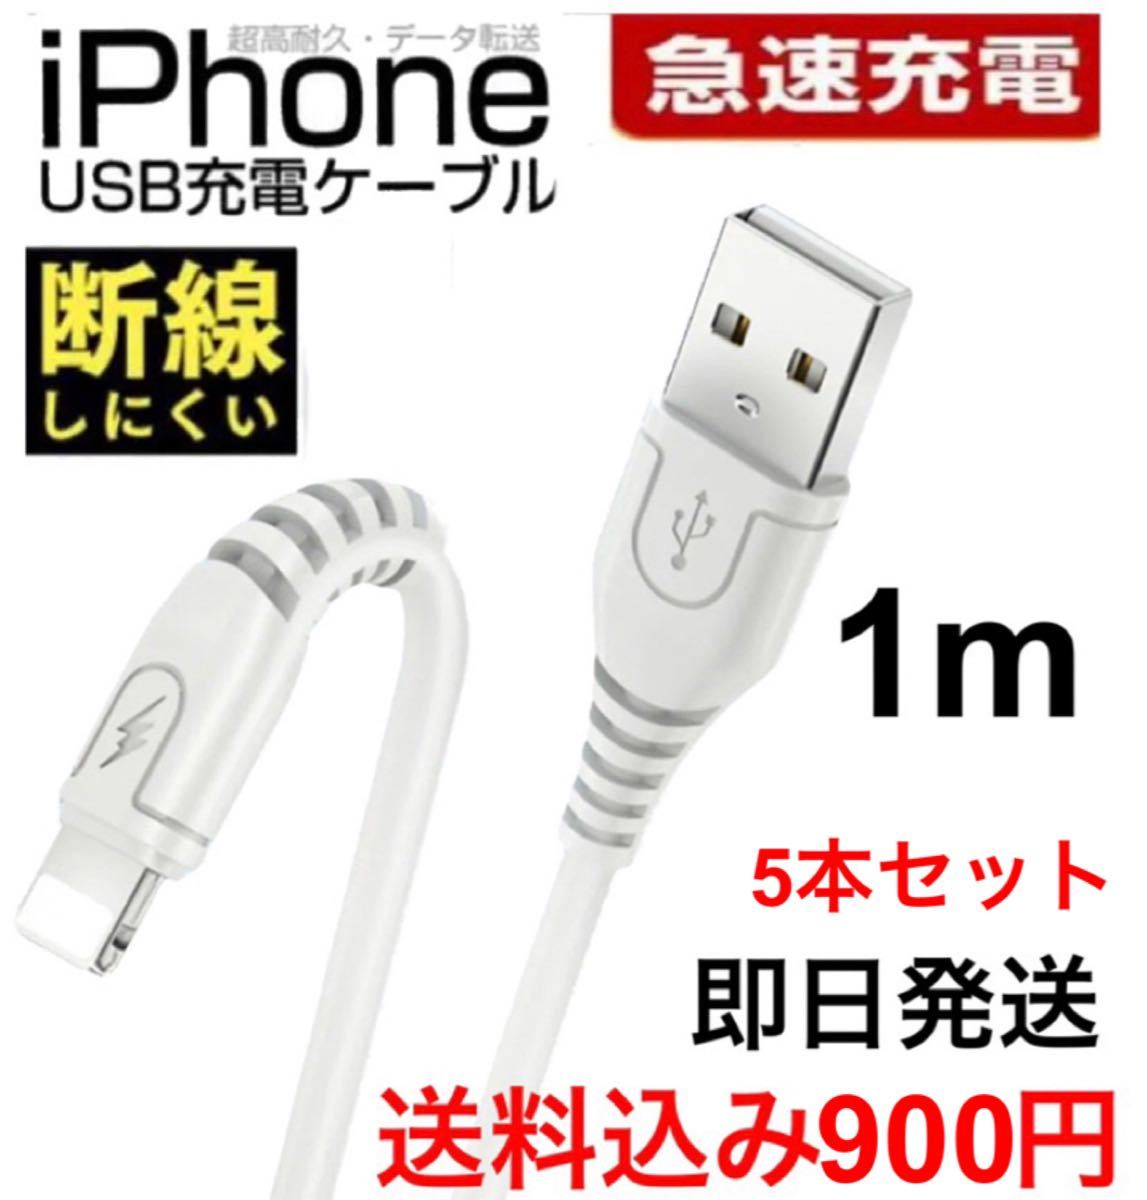 ライトニングケーブル 充電ケーブル 急速充電 iPhone データ転送 USBケーブル ケーブル